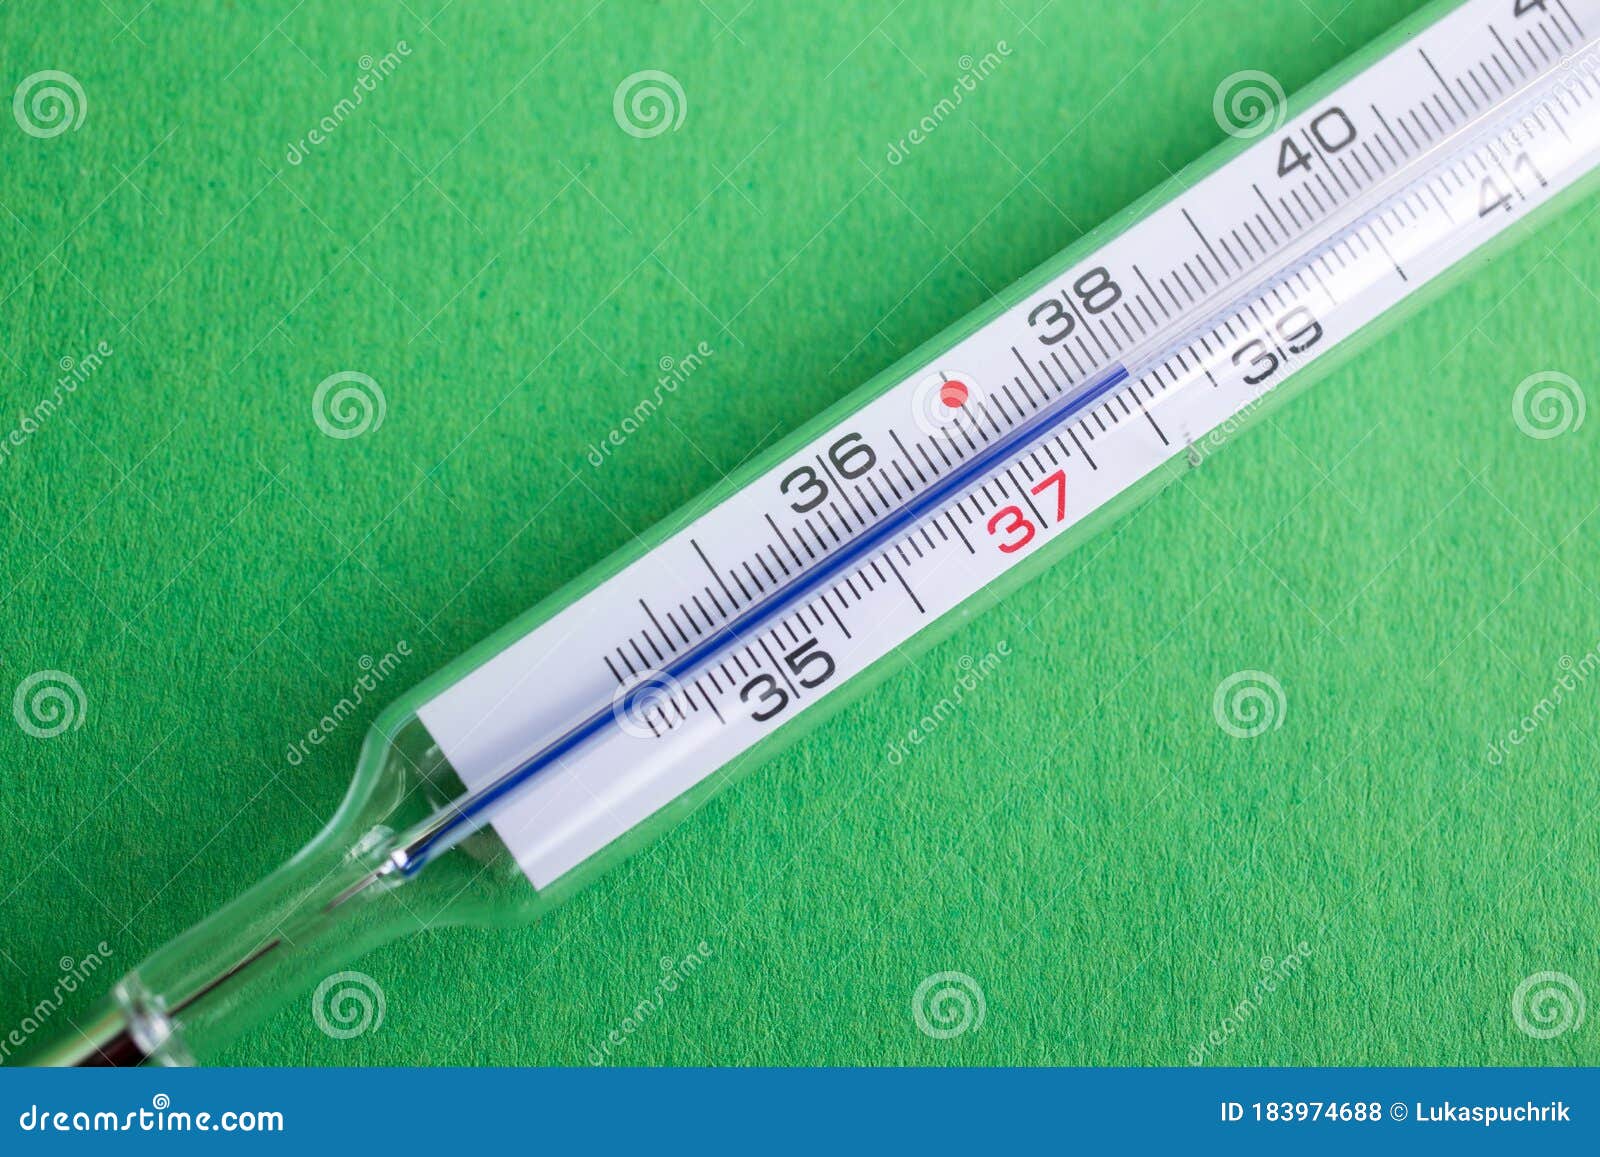 Termometro Analogico a Mercurio Con 37°c Di Virus Corona Dell